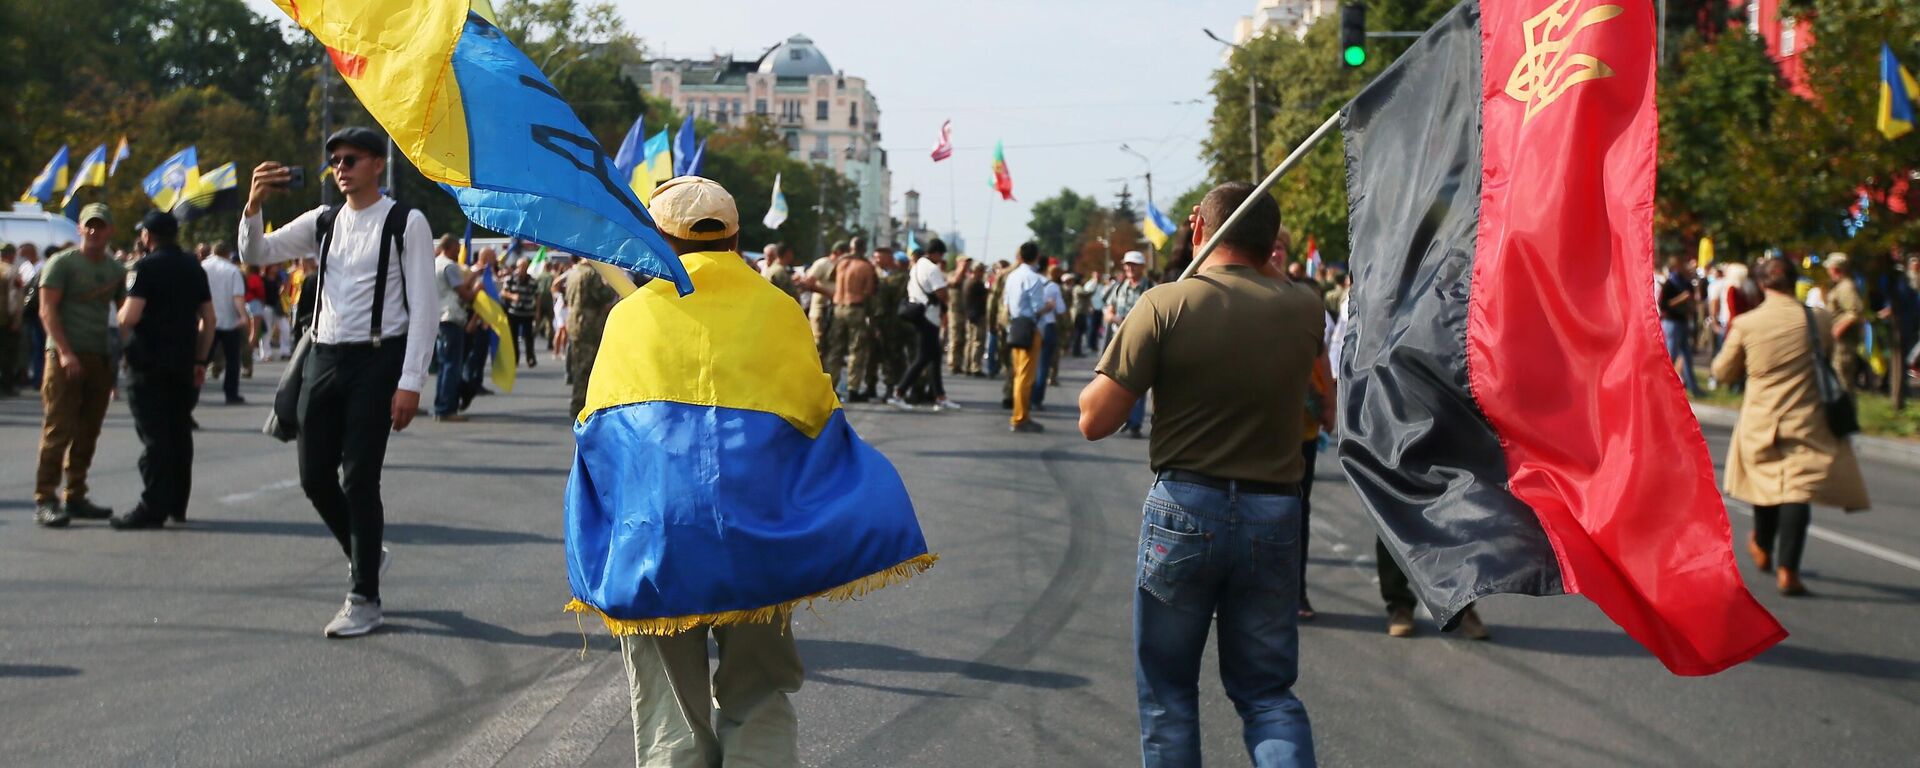 Участники Марша защитников Украины во время акции в рамках празднования Дня независимости страны в Киеве - Sputnik Узбекистан, 1920, 24.08.2021